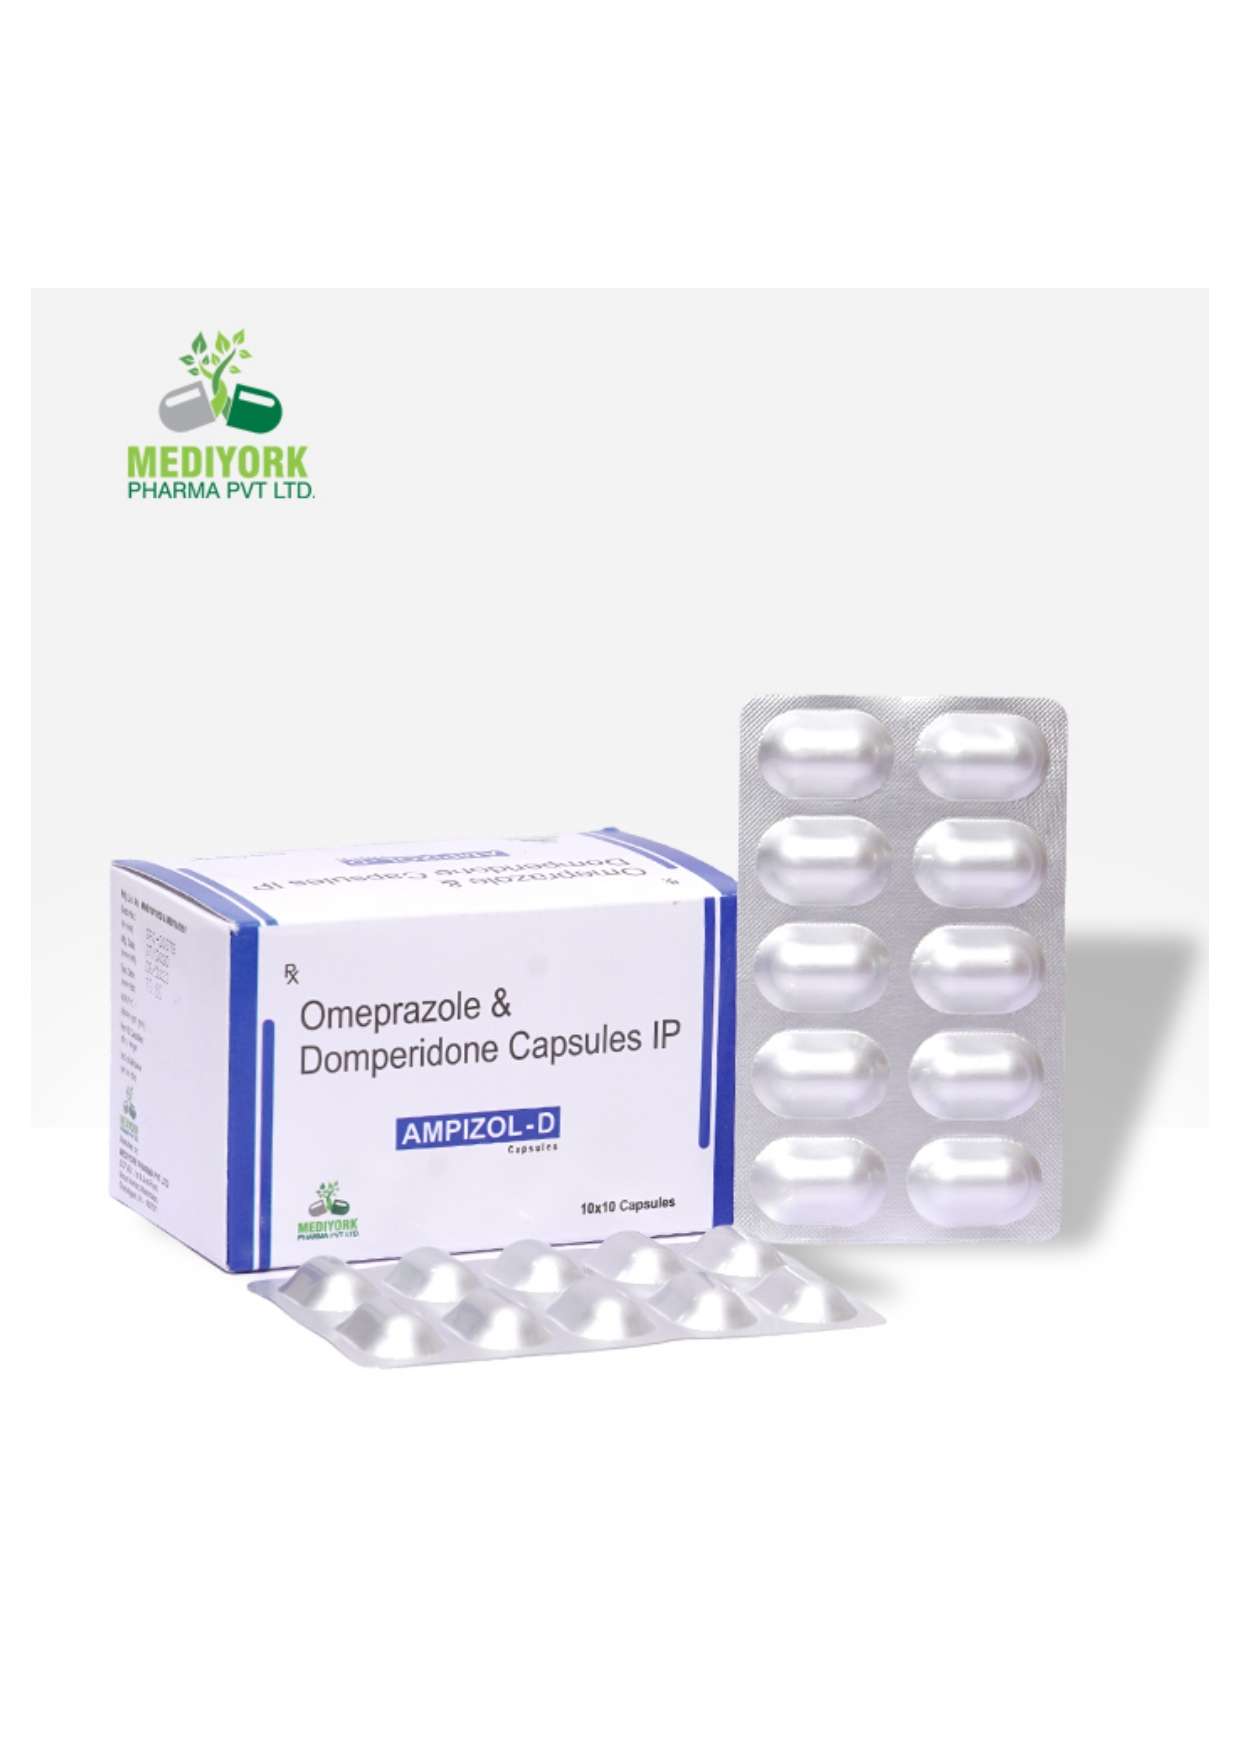 omeprazole 20 mg+
domperidone 10 mg